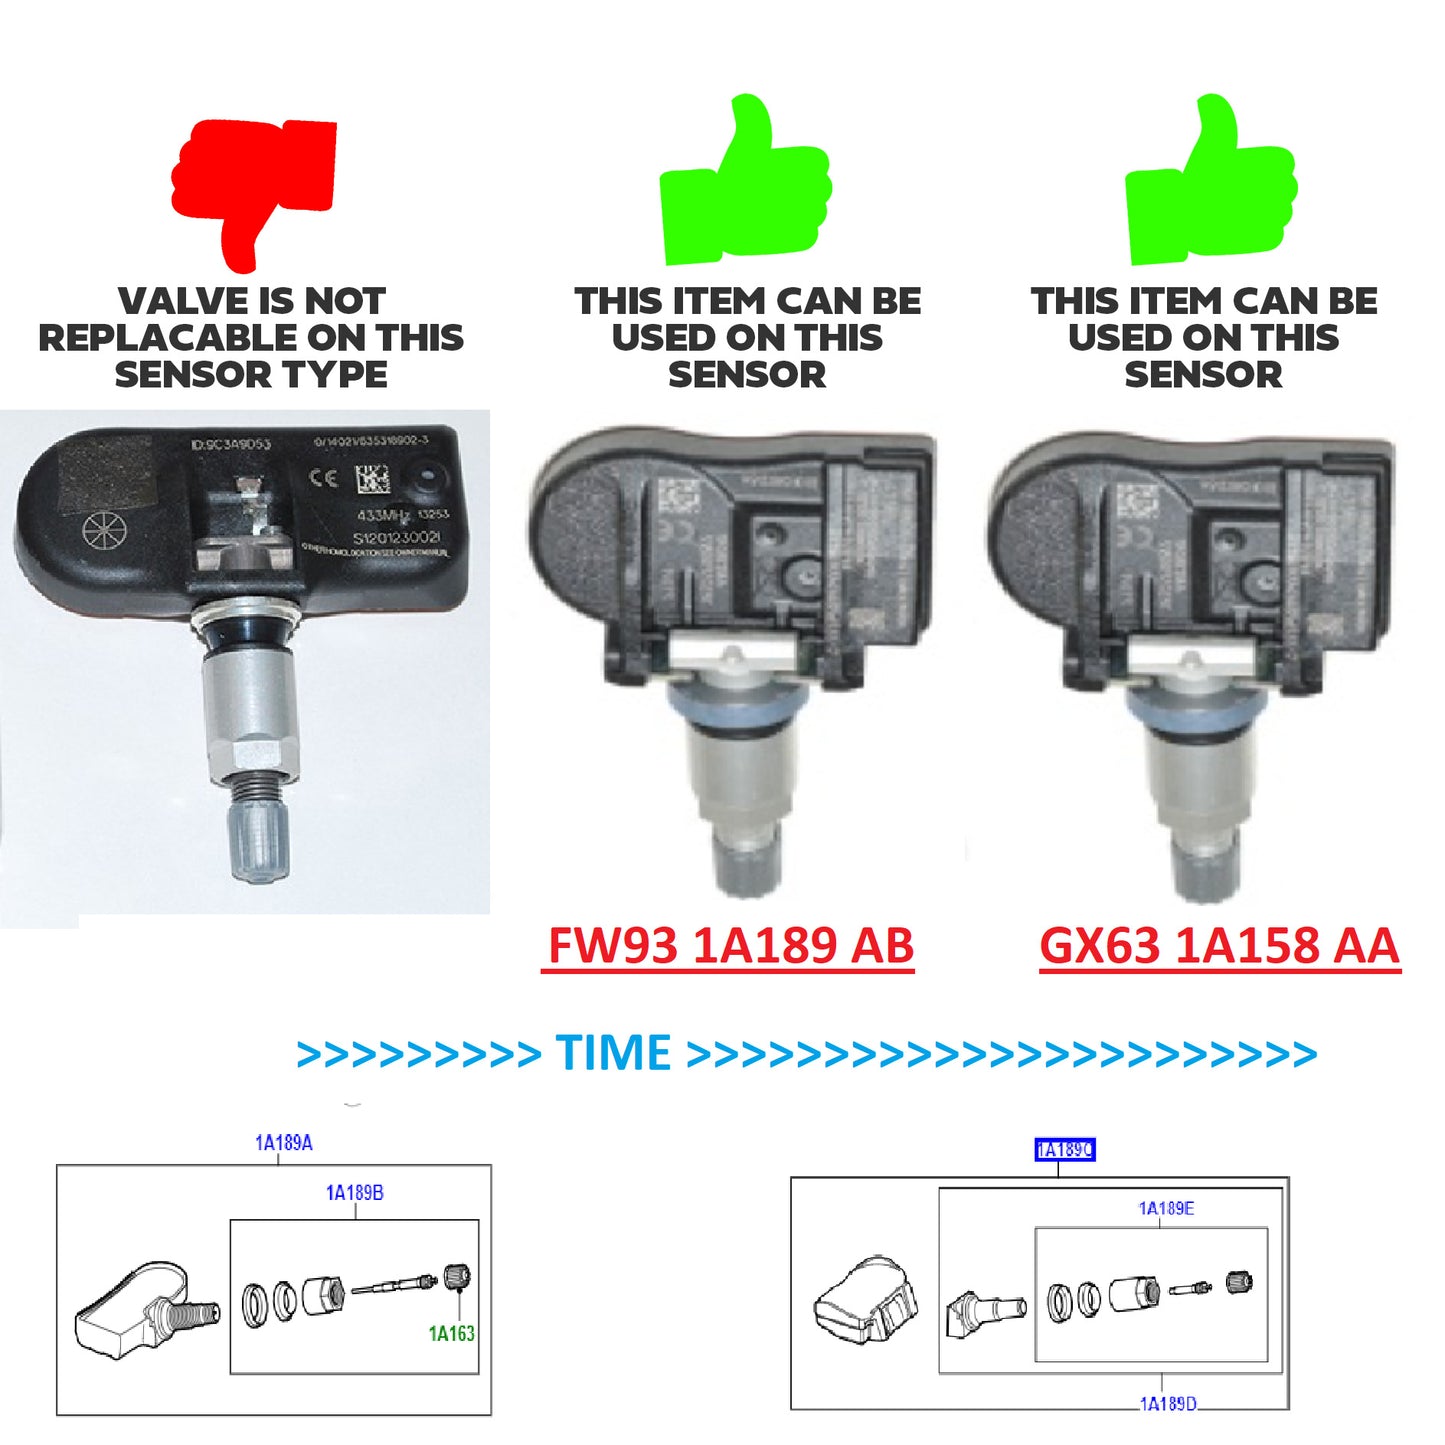 Tyre Pressure Monitoring System (TPMS) Service Kit for Range Rover Velar